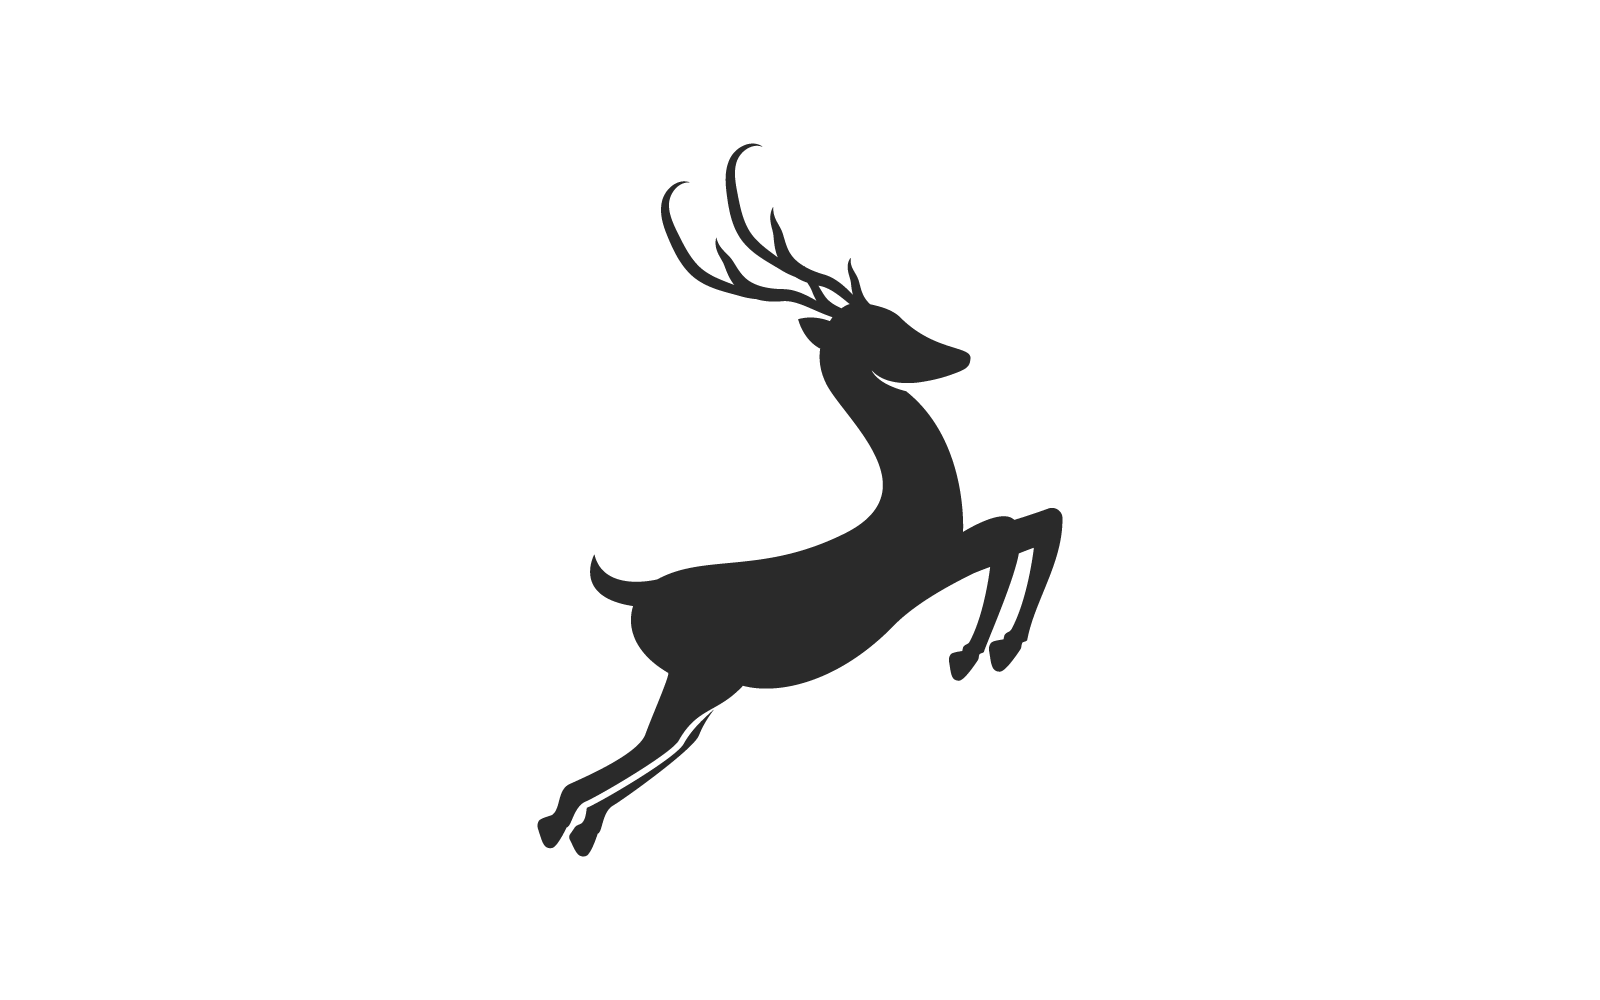 Deer antler ilustration logo template